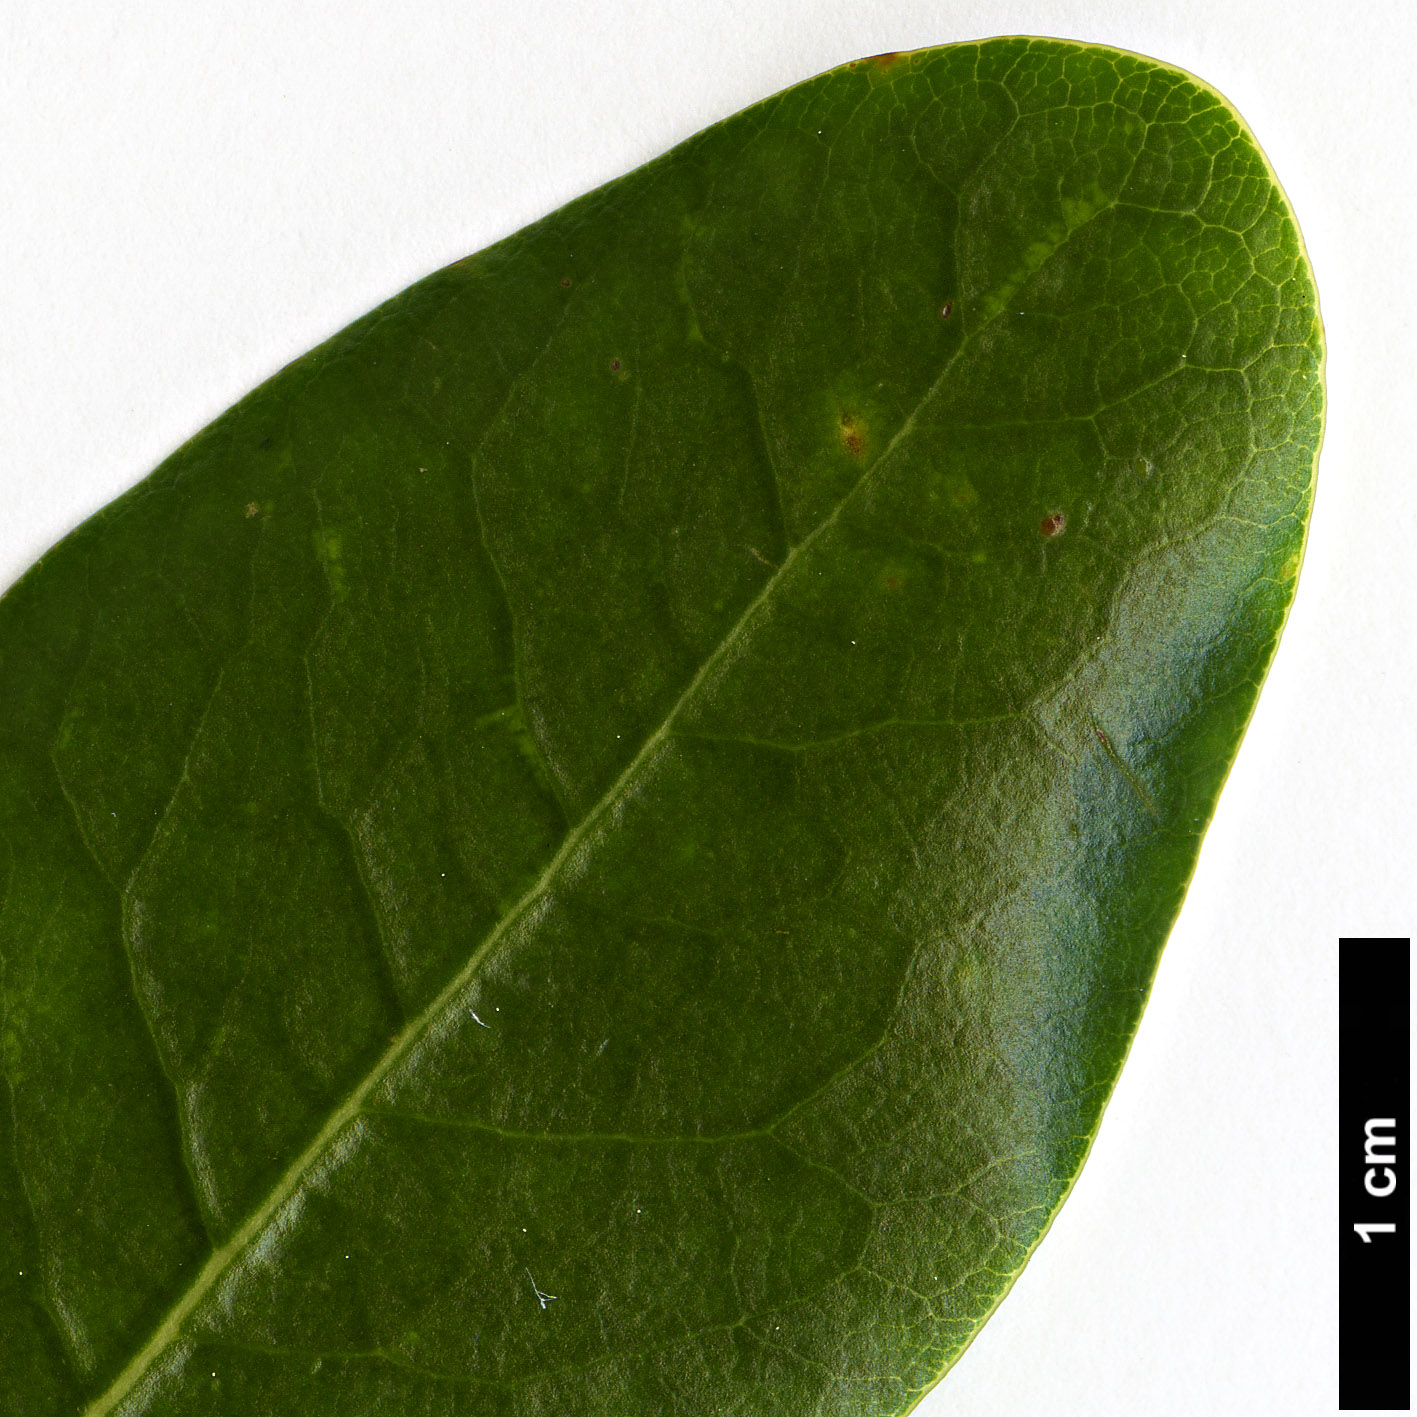 High resolution image: Family: Pittosporaceae - Genus: Pittosporum - Taxon: coriaceum